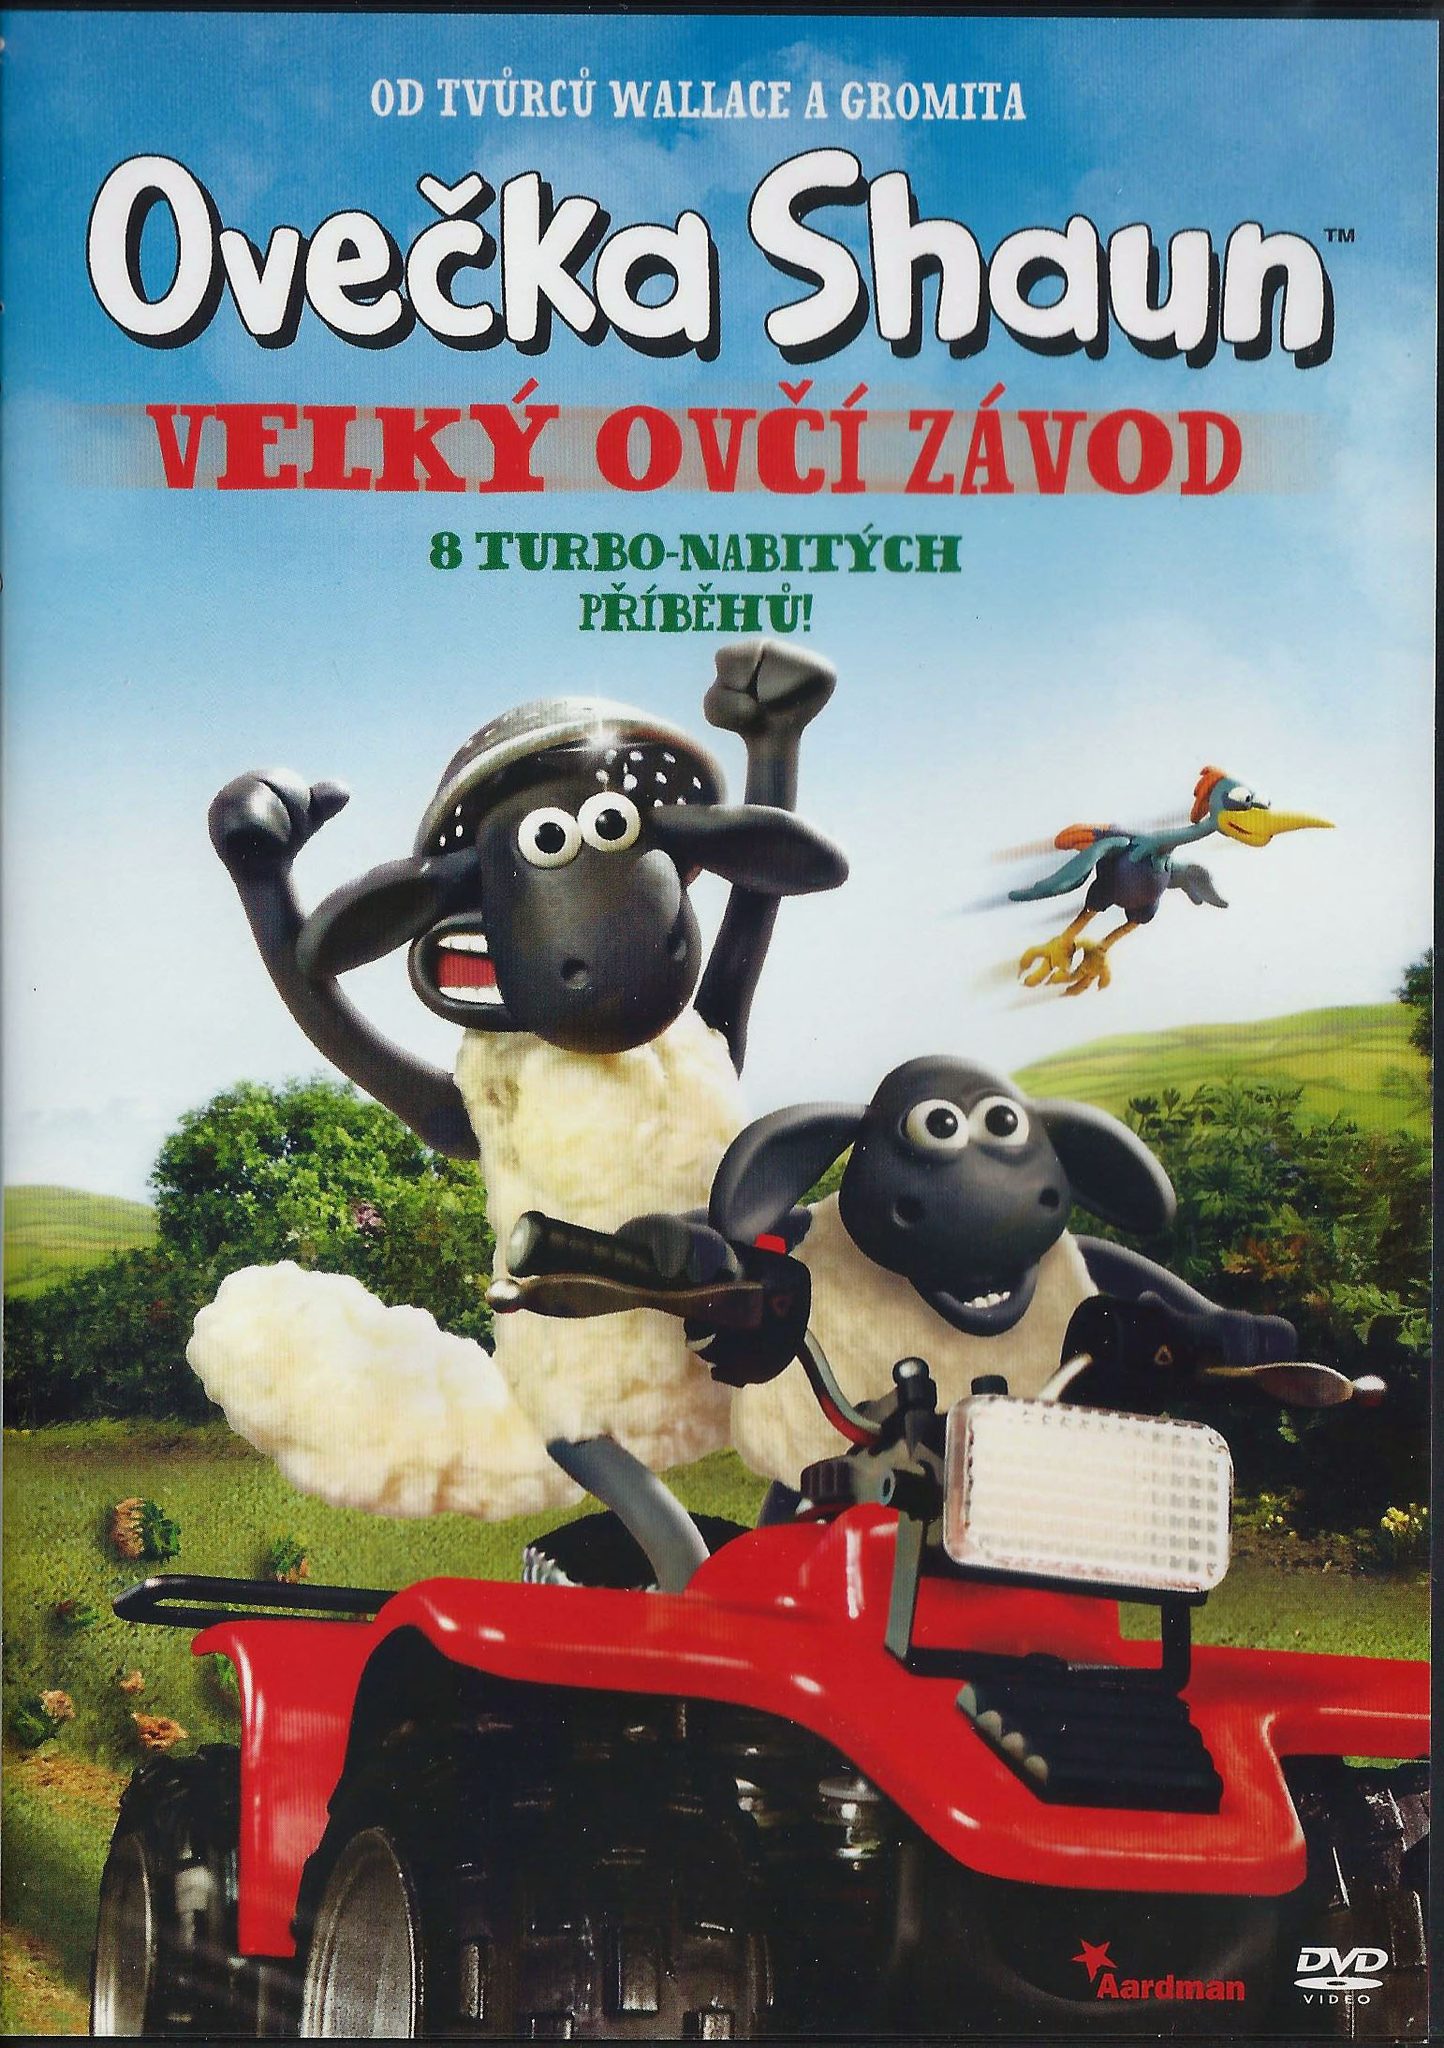 DVD Oveka Shaun - Velk ov zvod